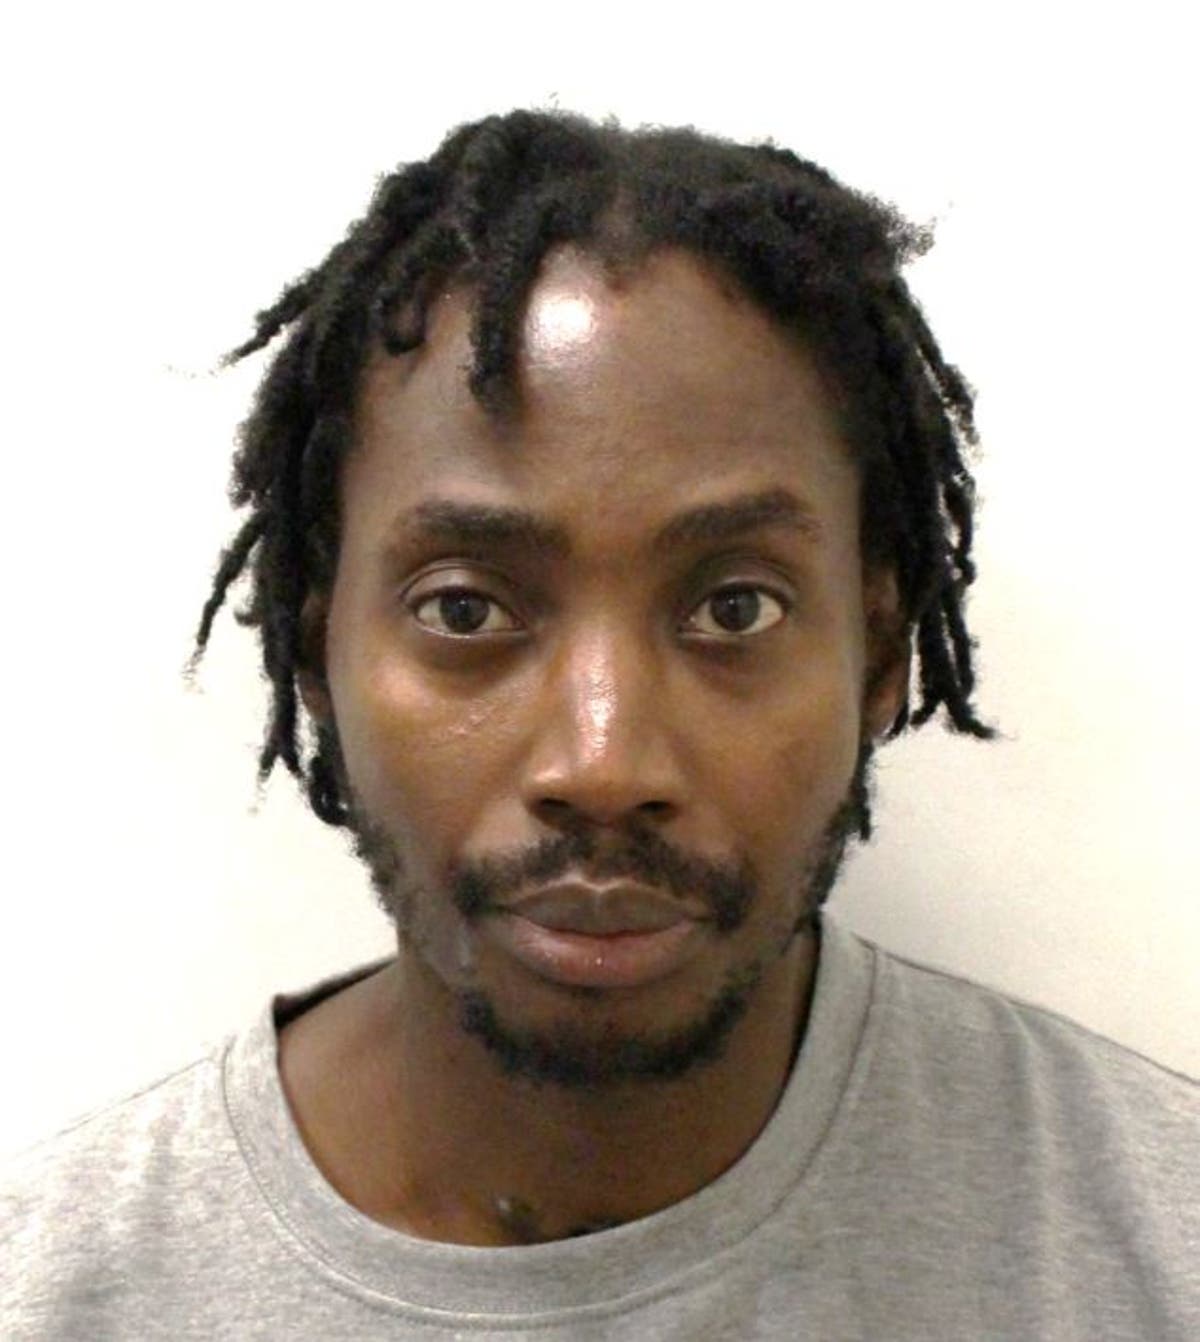 Drug dealer jailed for Finsbury Park murder after mobile phone data put him at crime scene